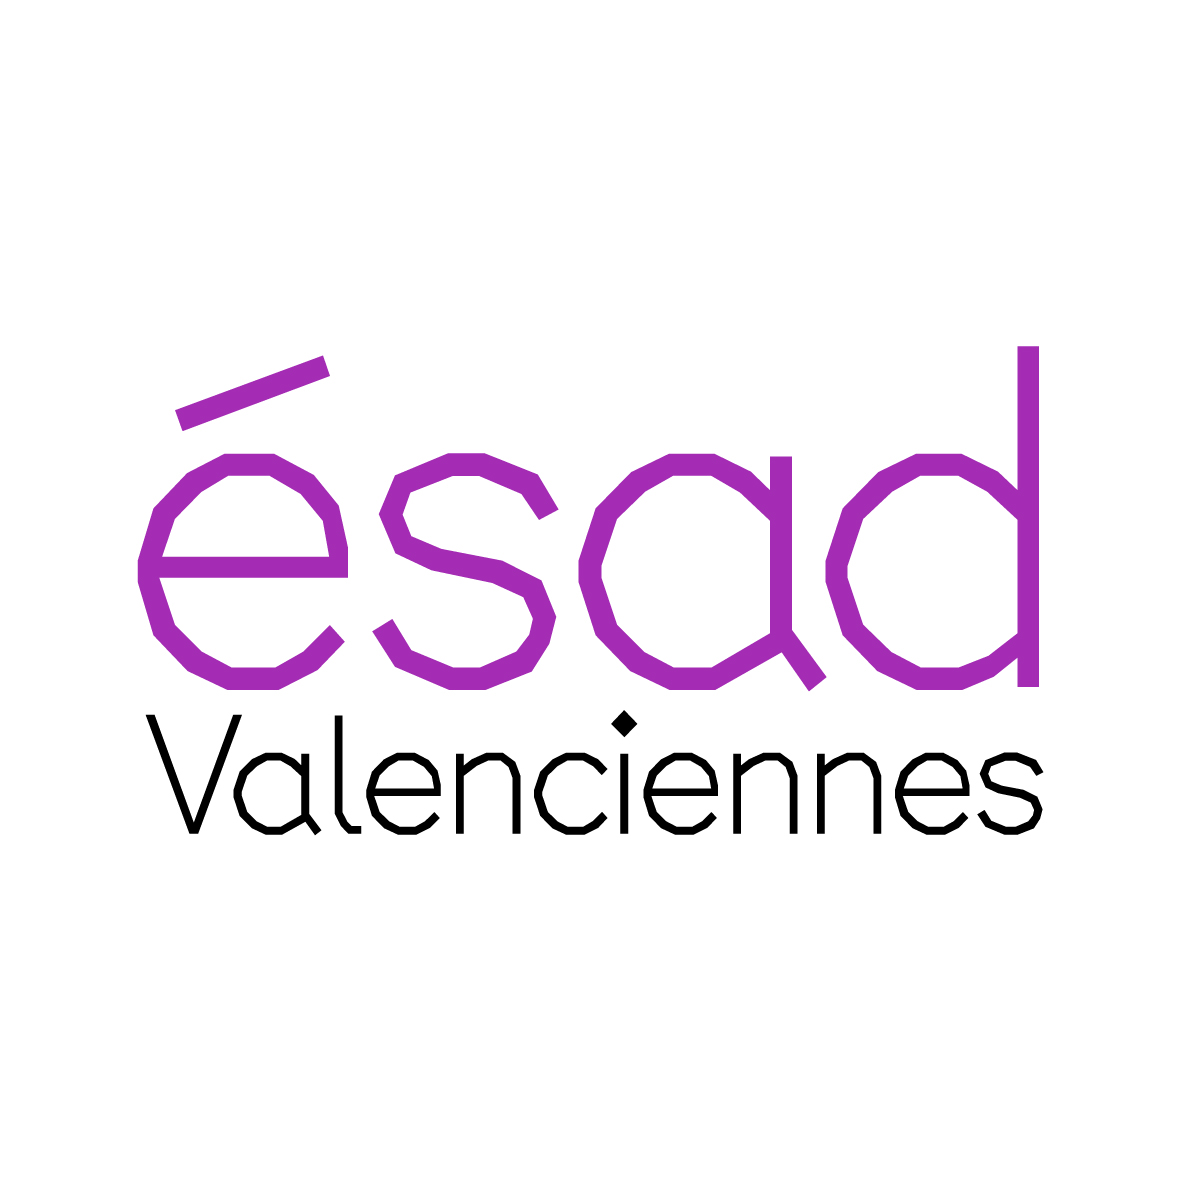 ESAD de Valenciennes